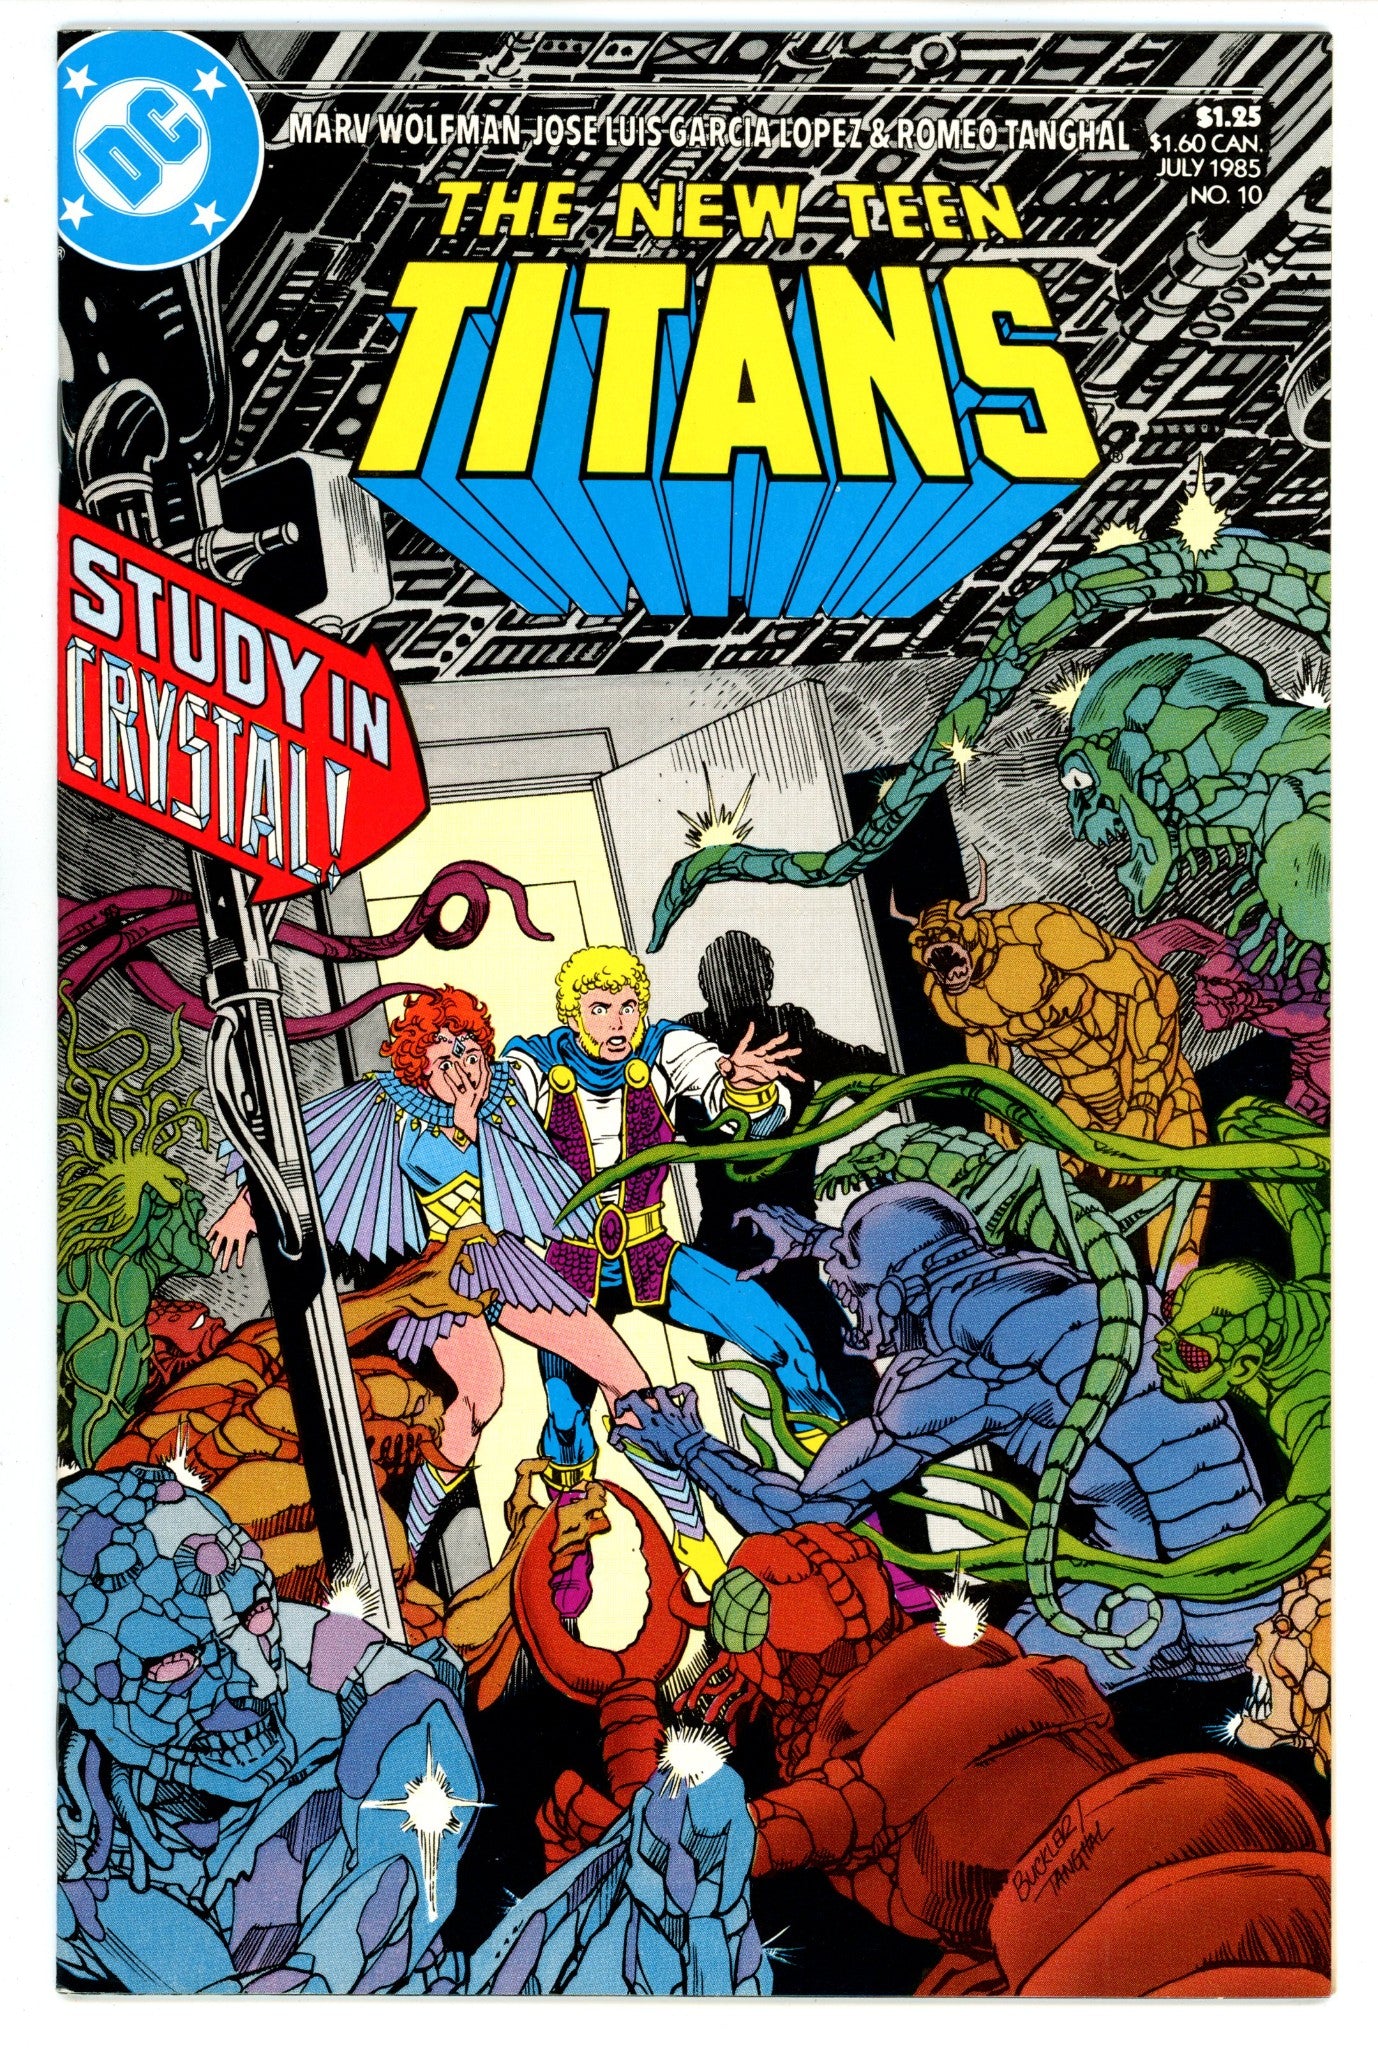 The New Teen Titans Vol 2 10 High Grade (1985) 